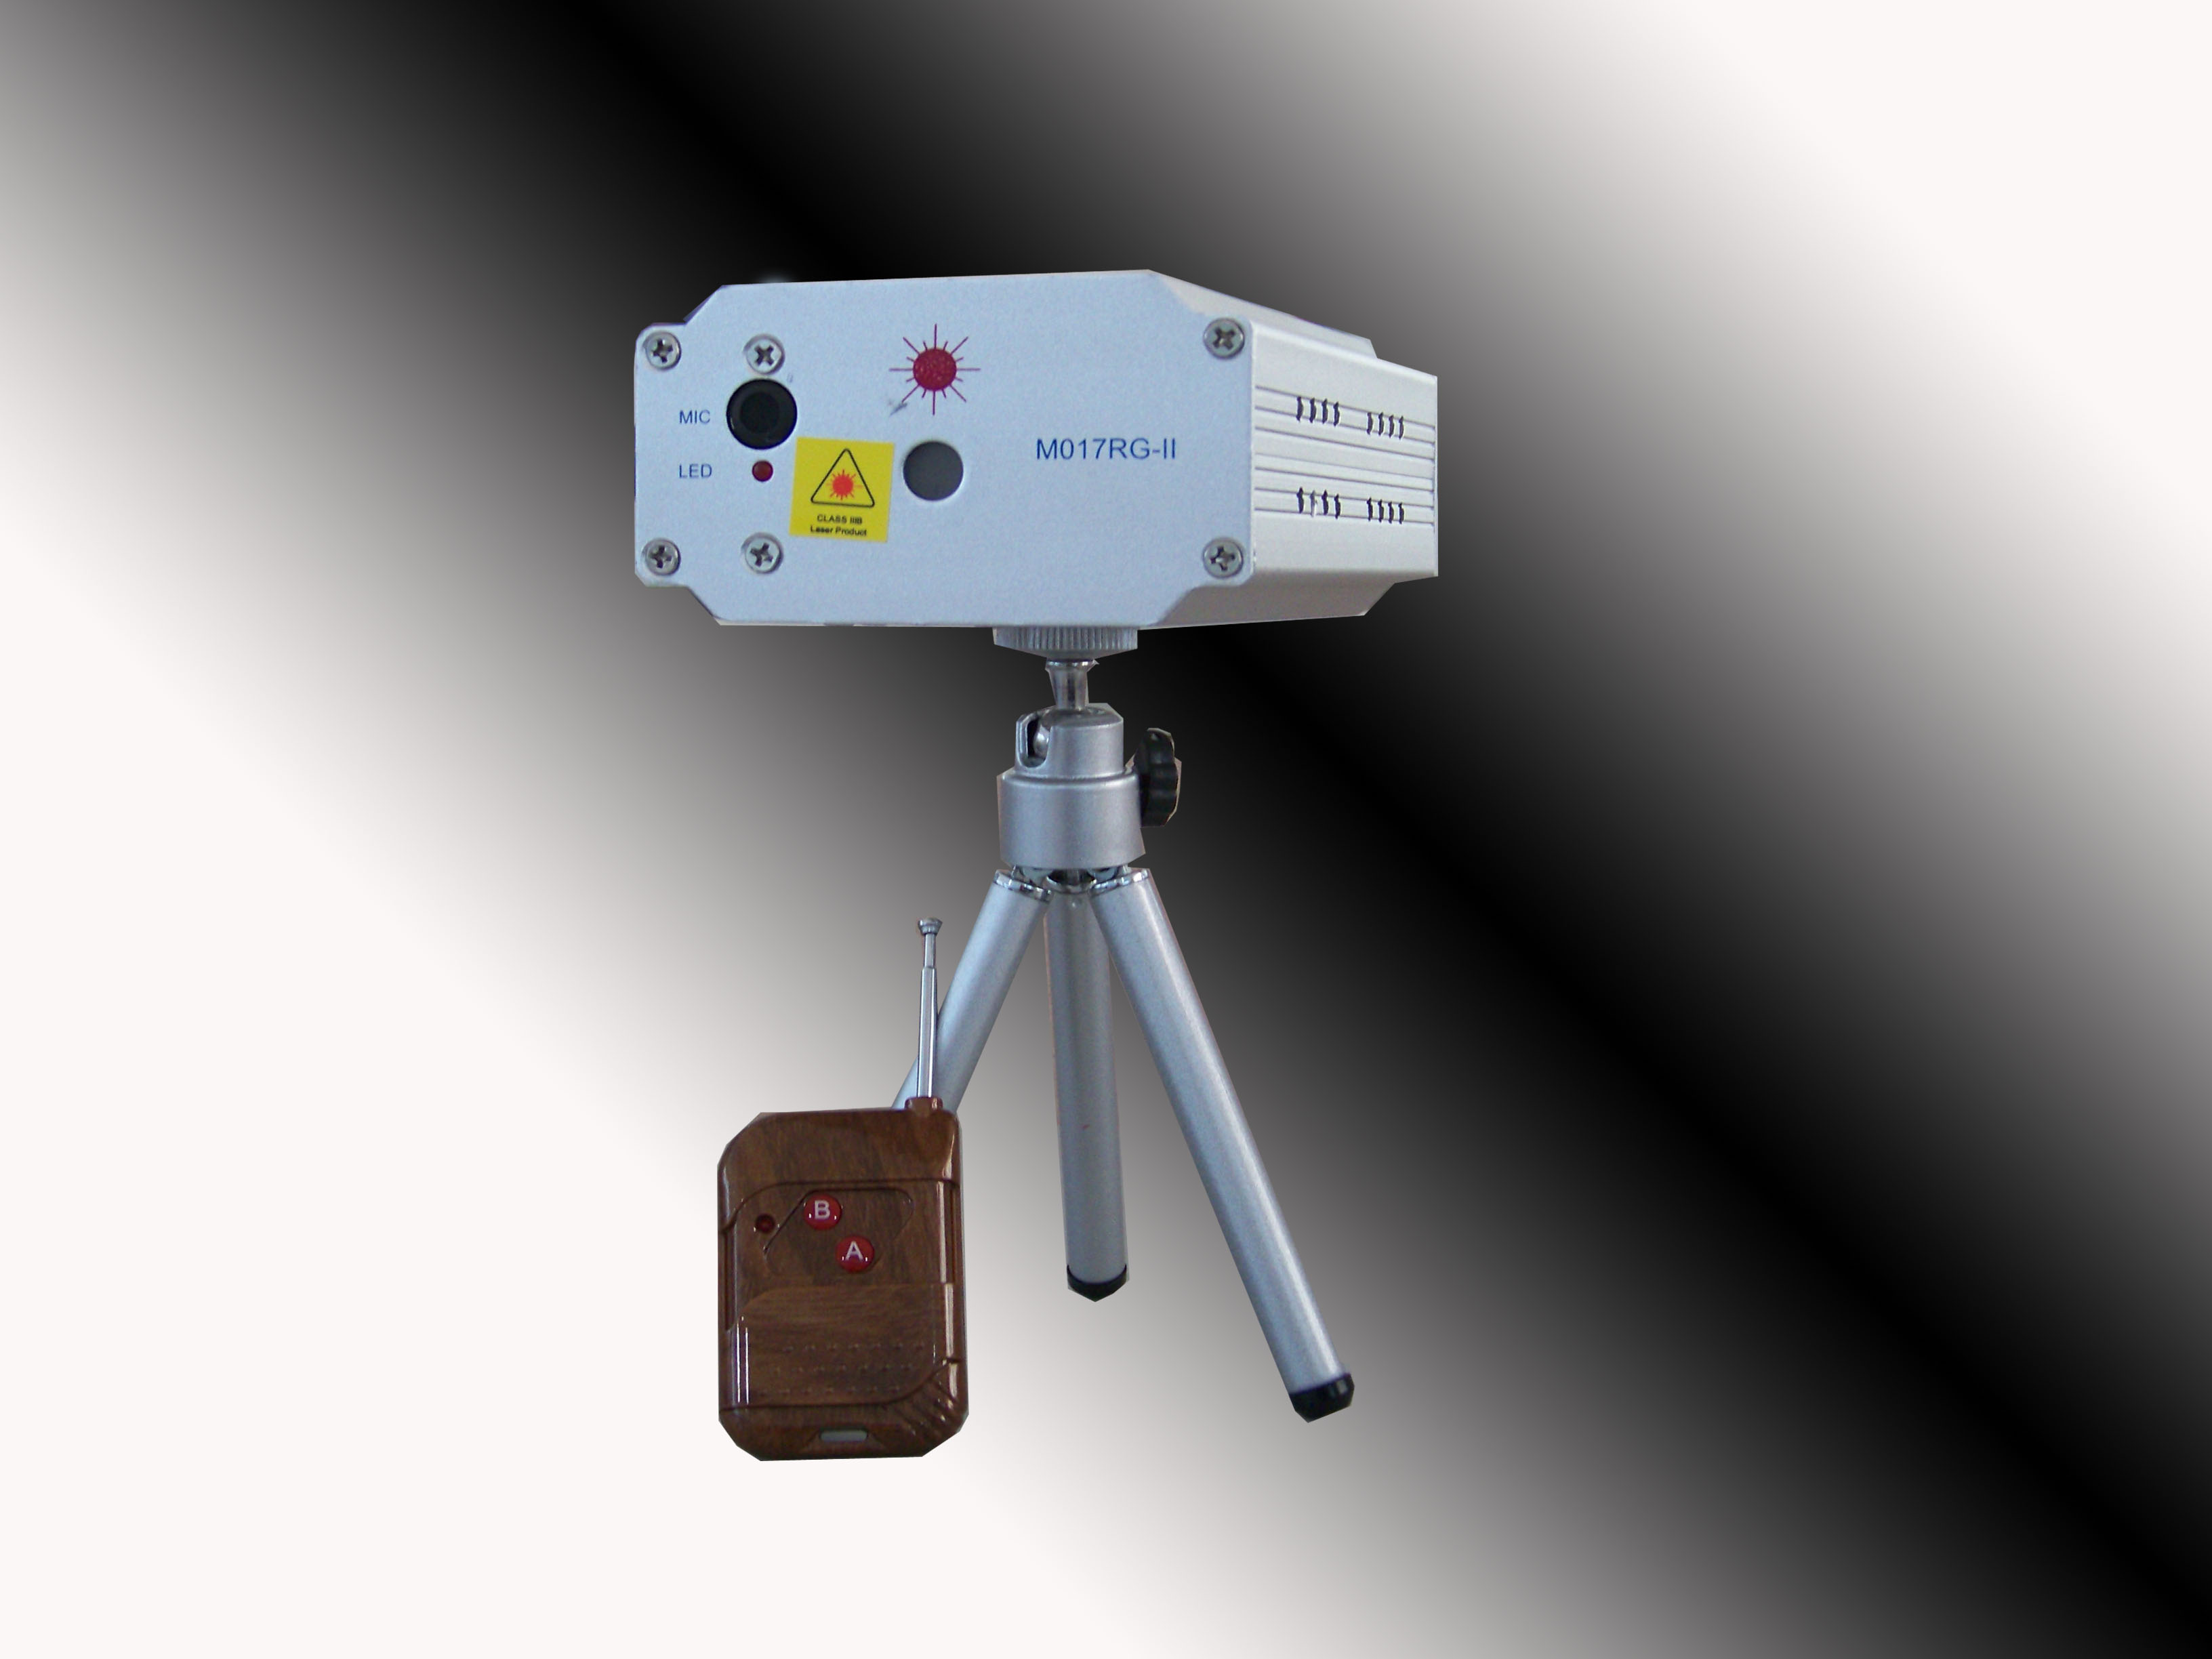 Προτζεκτορας Φωτορυθμικό Projector Laser Mg-017RG-II Lightings W/Remote Control 35093 με κόκκινο & πράσινο...